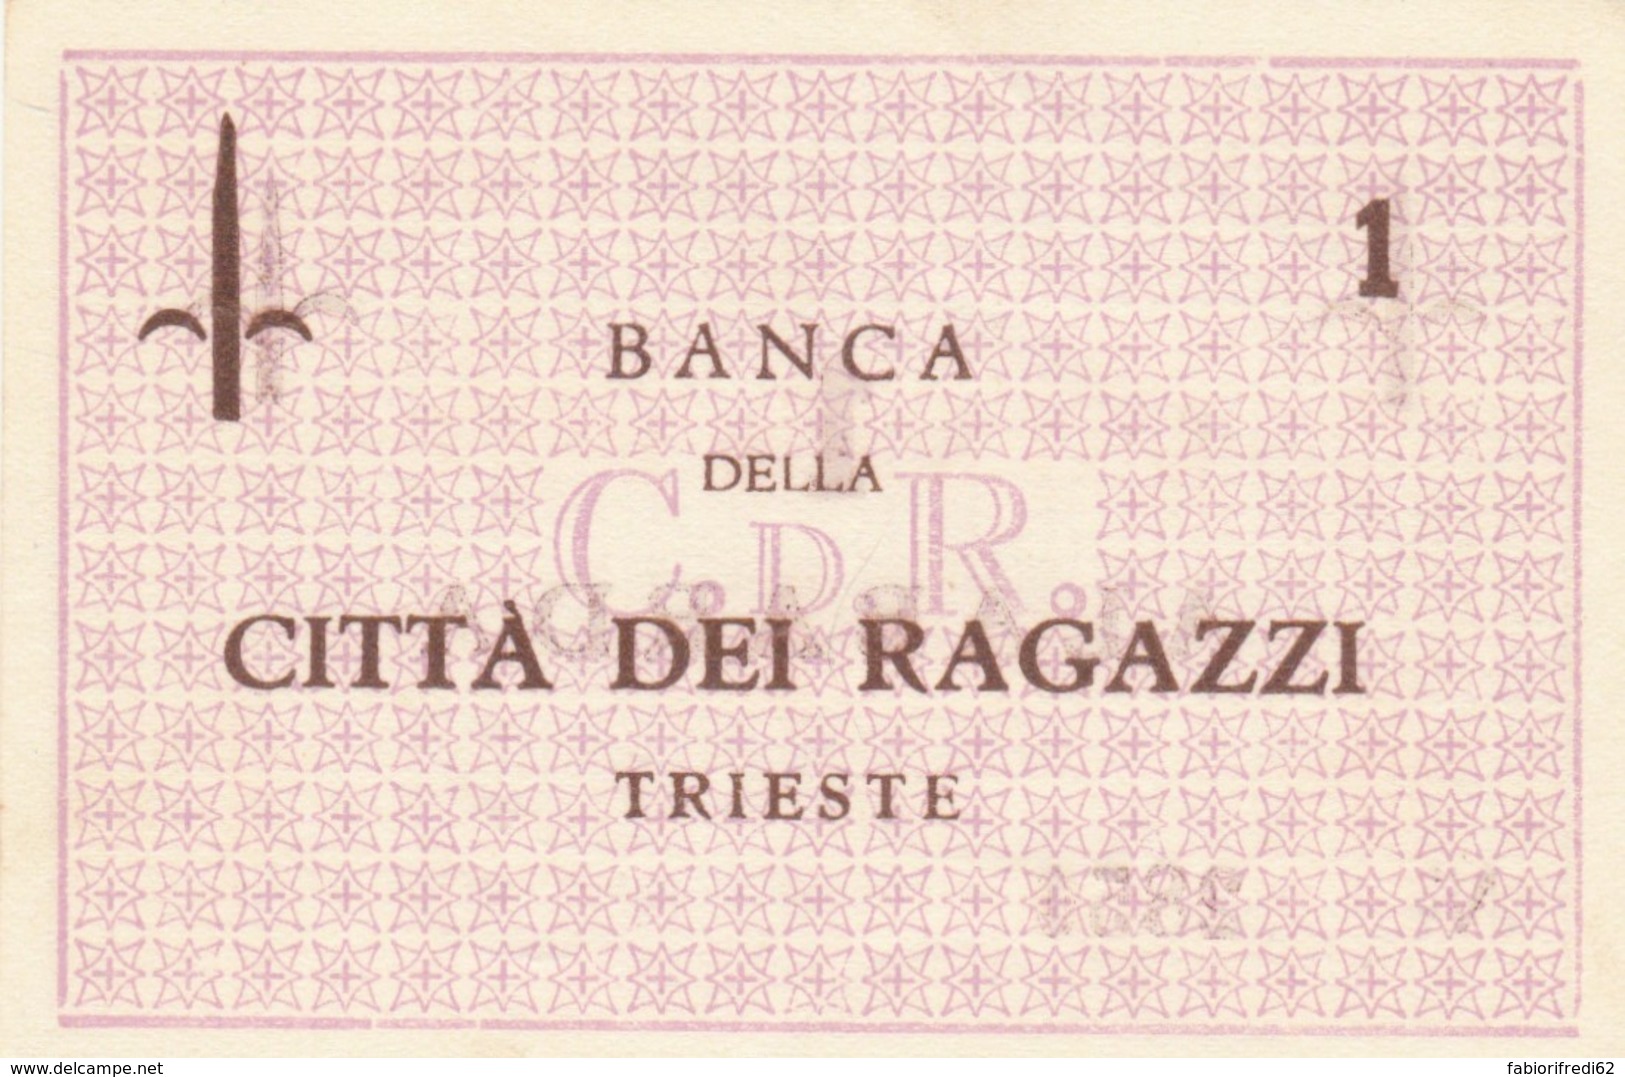 BUONO  BANCA CITTA RAGAZZI TRIESTE 1 UNC (BN364 - [10] Cheques En Mini-cheques